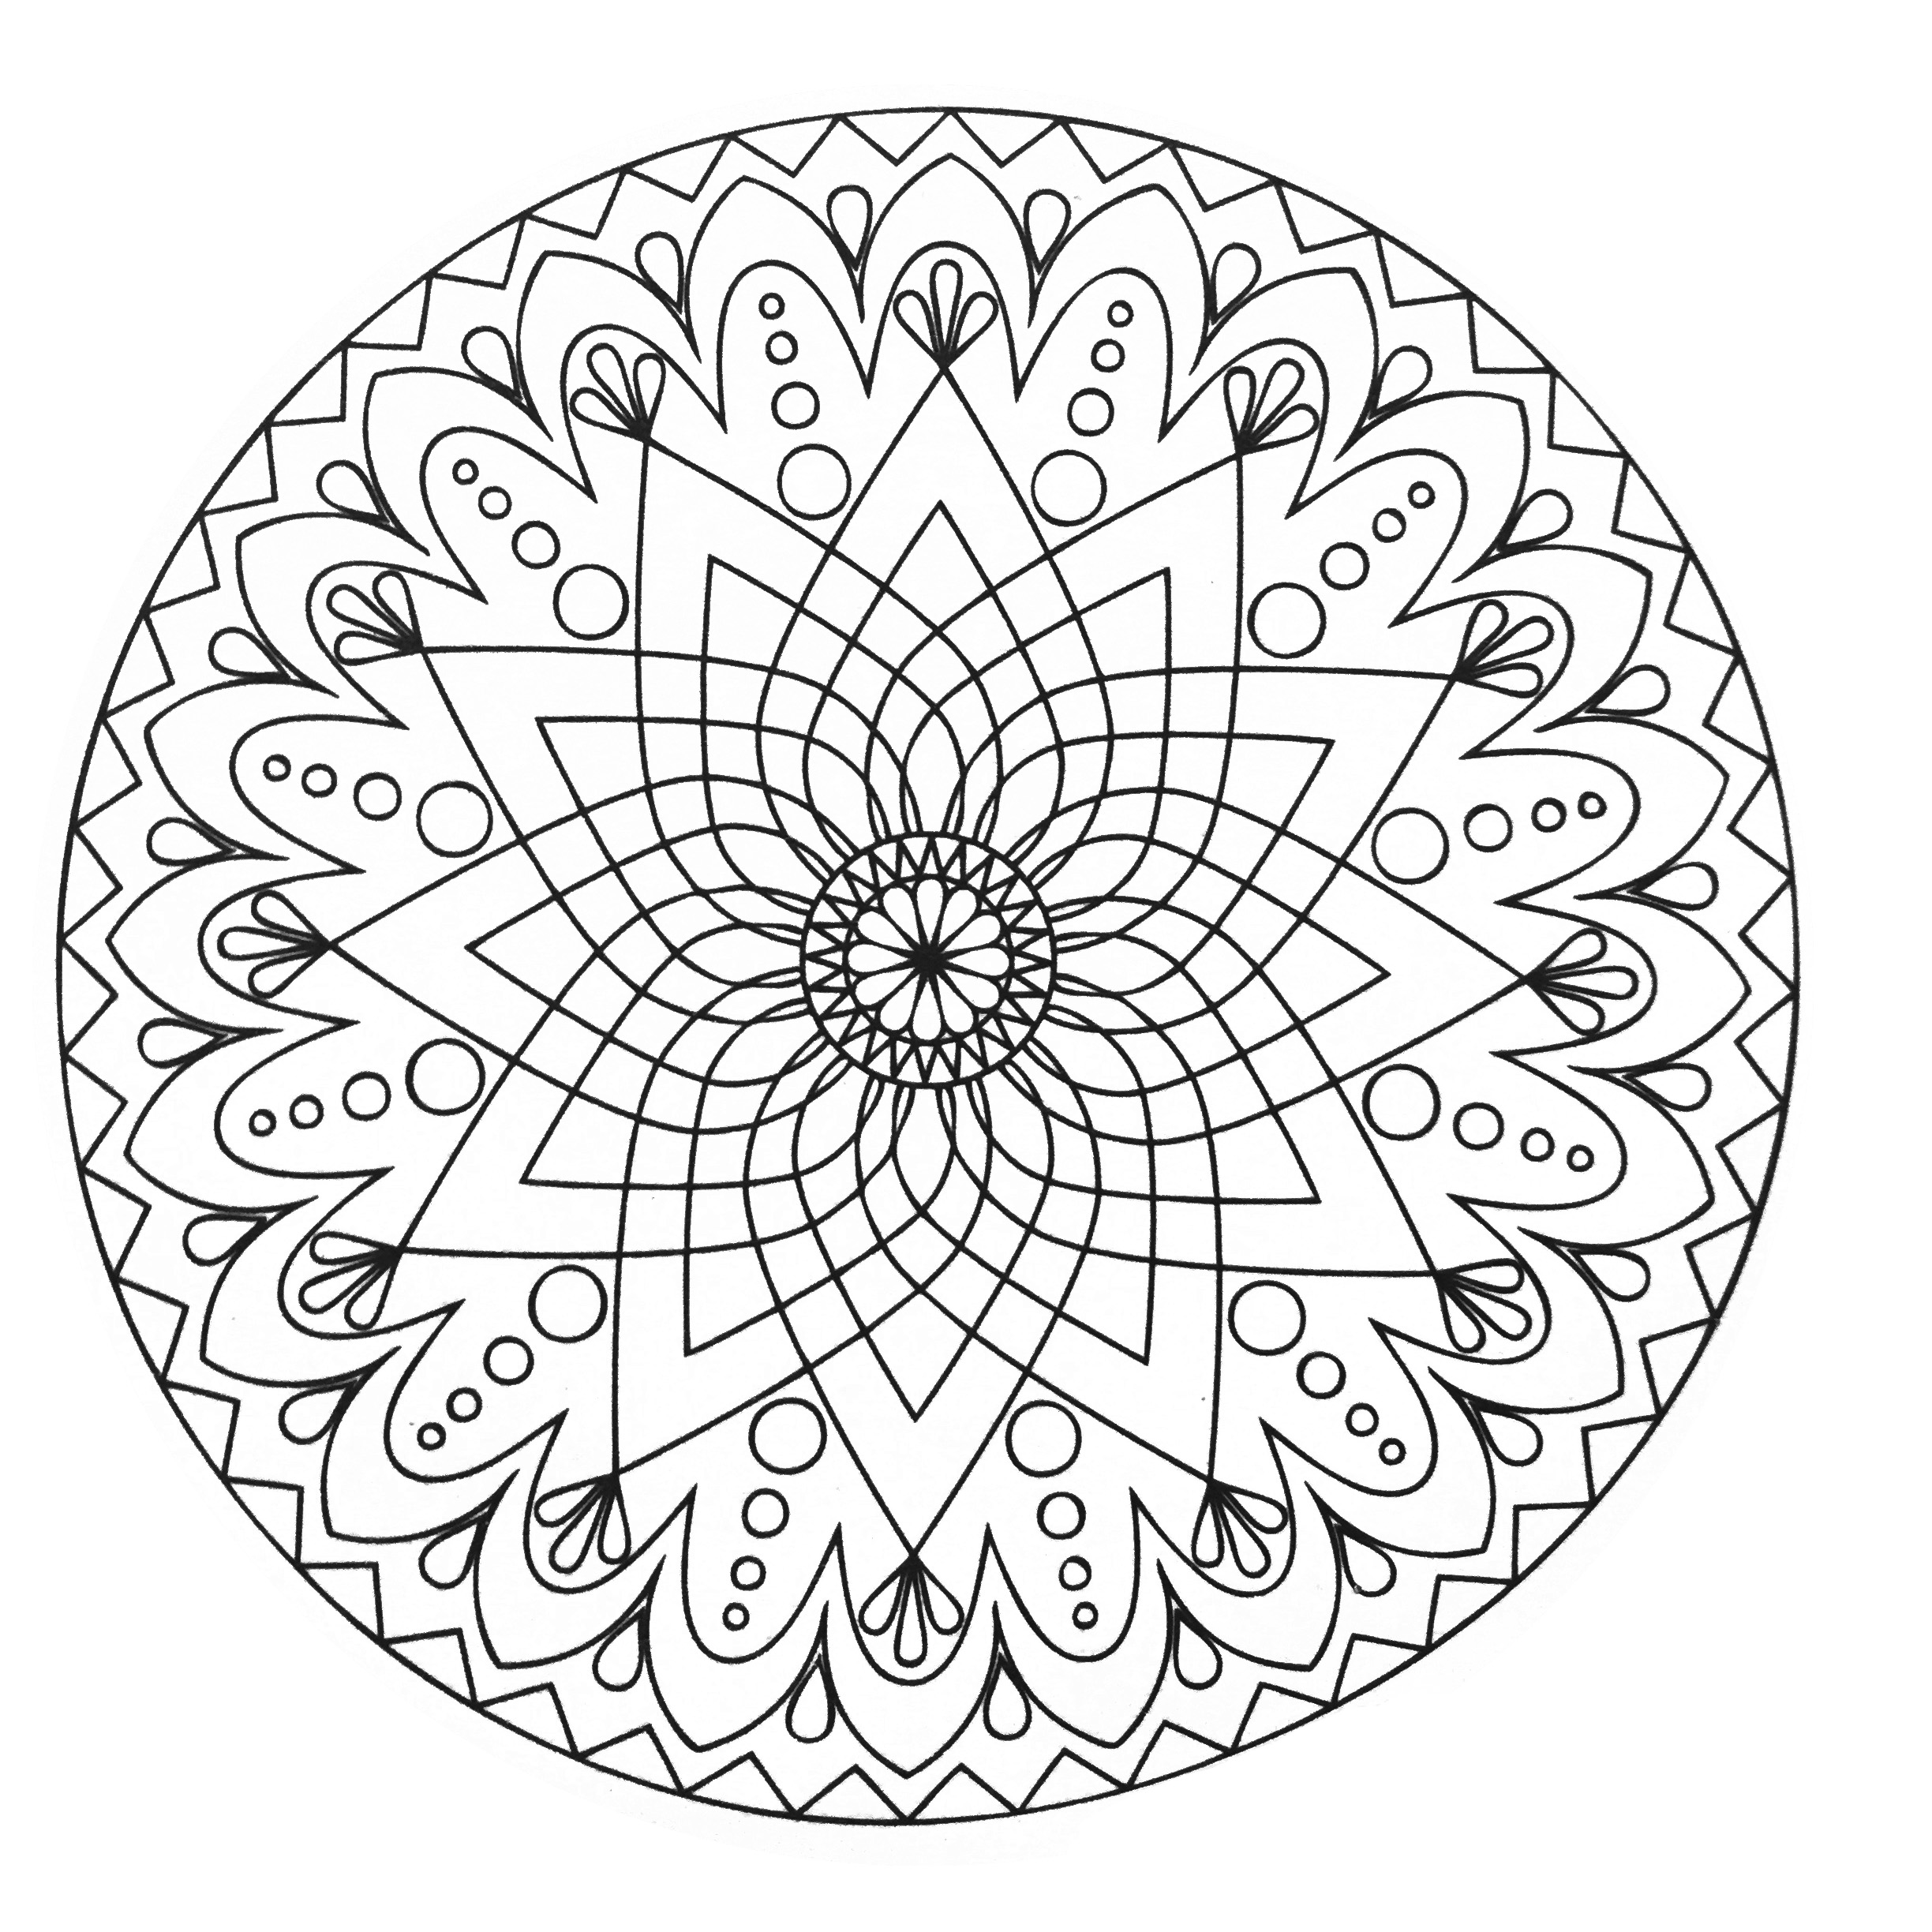 Détendez vous avec ce très beau Mandala comportant des formes très régulières et symétriques, dessinées avec grand talent.